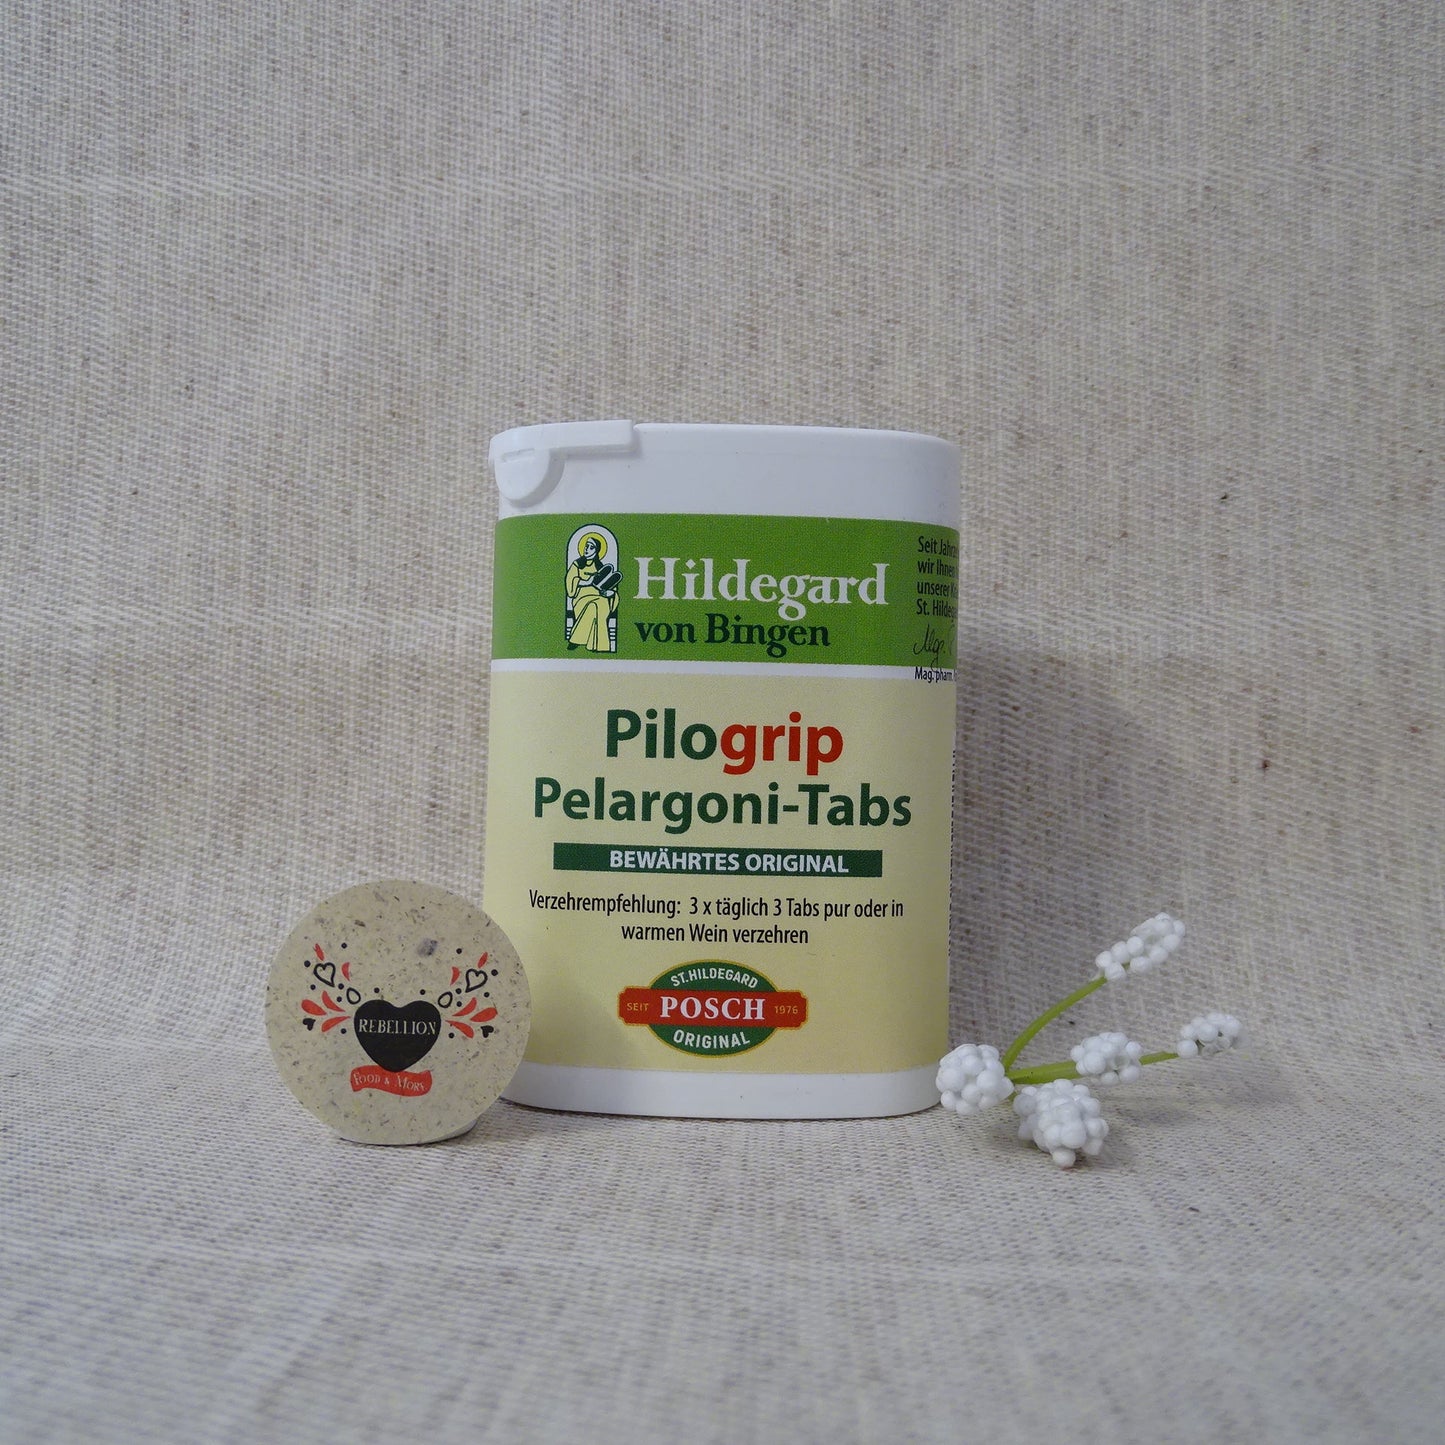 Pilogrip® Pelargoni-Tabs St.Hildegard Posch 70g Dose